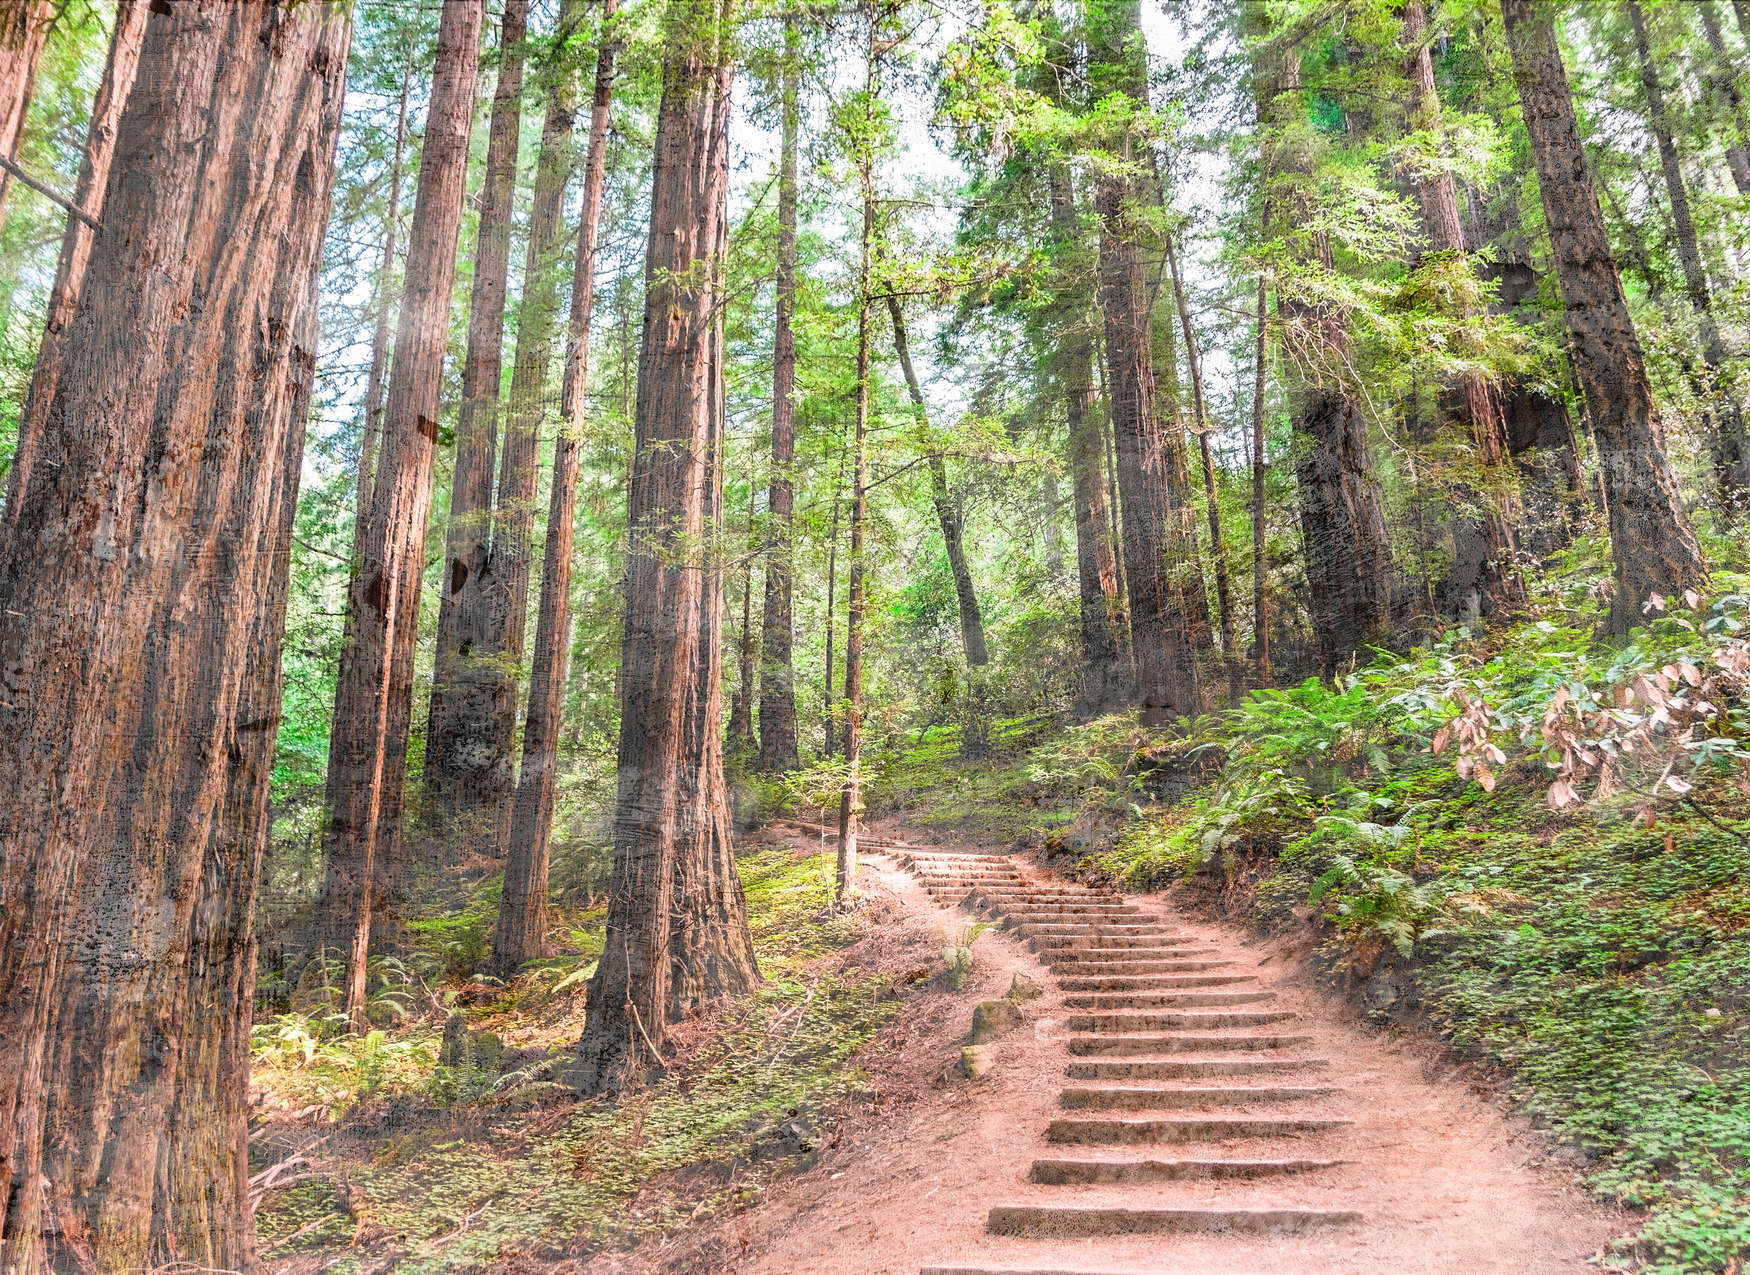             Escaleras de madera por el bosque - Marrón, verde, azul
        